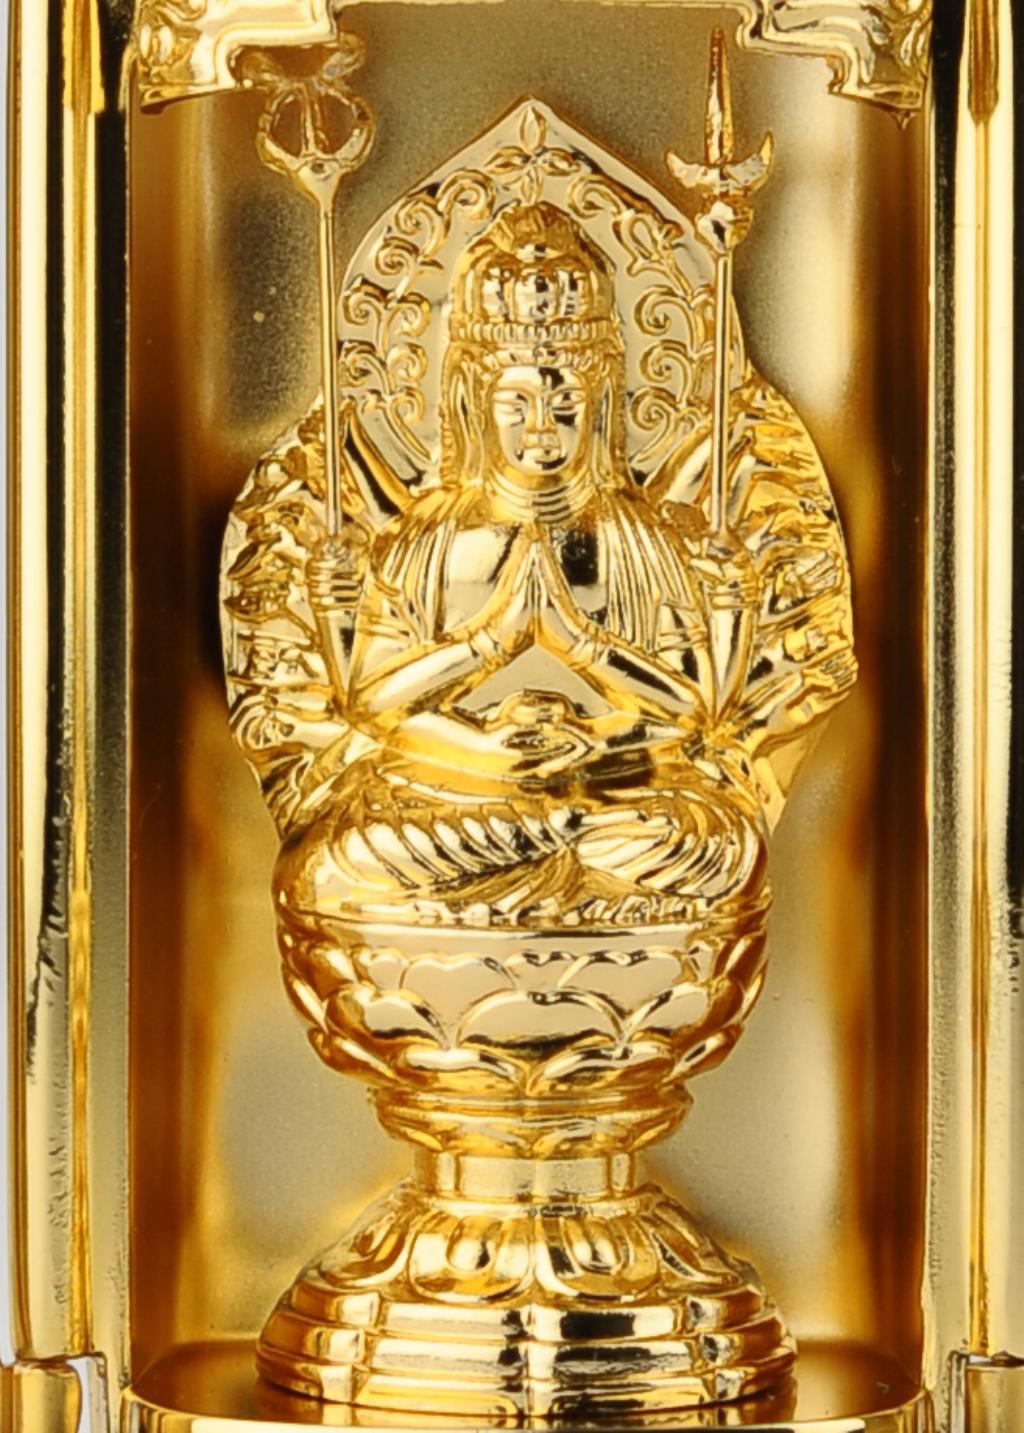 仏像 虚空蔵菩薩 厨子入り 純金メッキ仕上げ 総高9 7cm 高岡銅器 日本の手技 高岡銅器の仏像 本格仏像の仏像ワールド